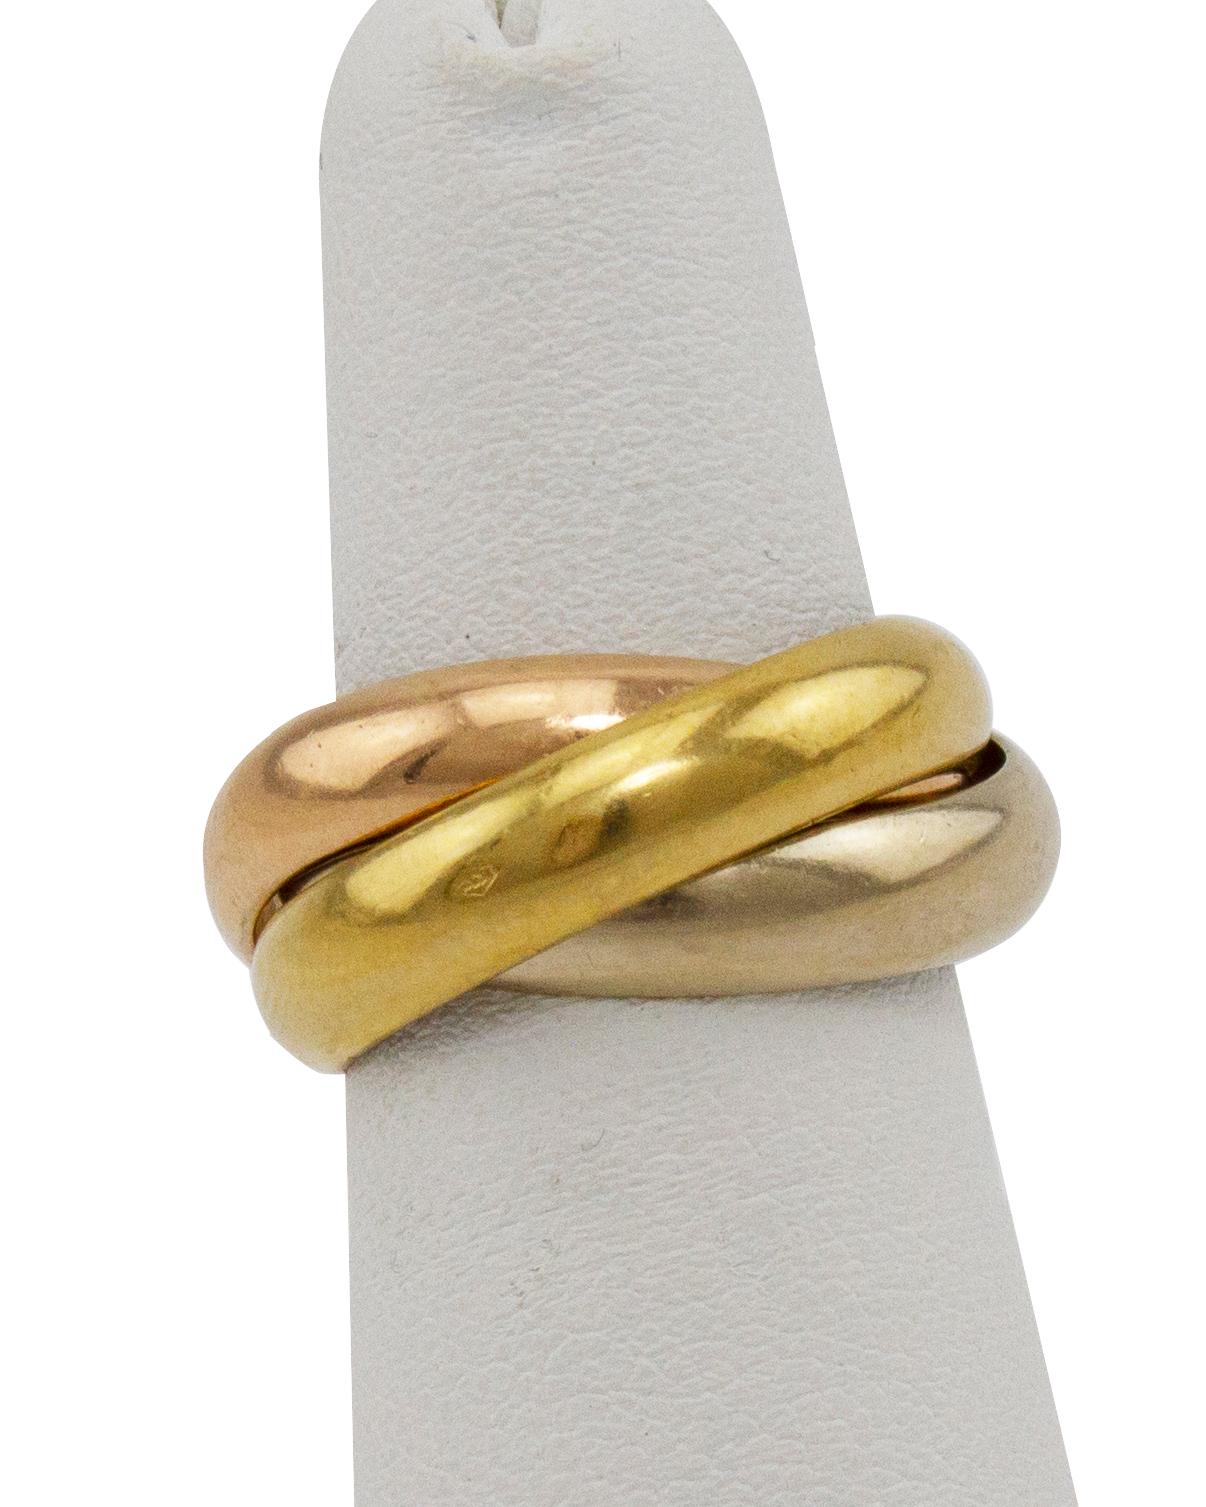 Der berühmte Trinity-Ring von Cartier. Mit drei sich kreuzenden Ringen aus 18 Karat Weiß-, Gelb- und Roségold. Hochglanzpolierte Oberfläche mit Vintage-Patina. Vollständig signierte Innenausstattung mit Cartier-Markierungen. In sehr gutem